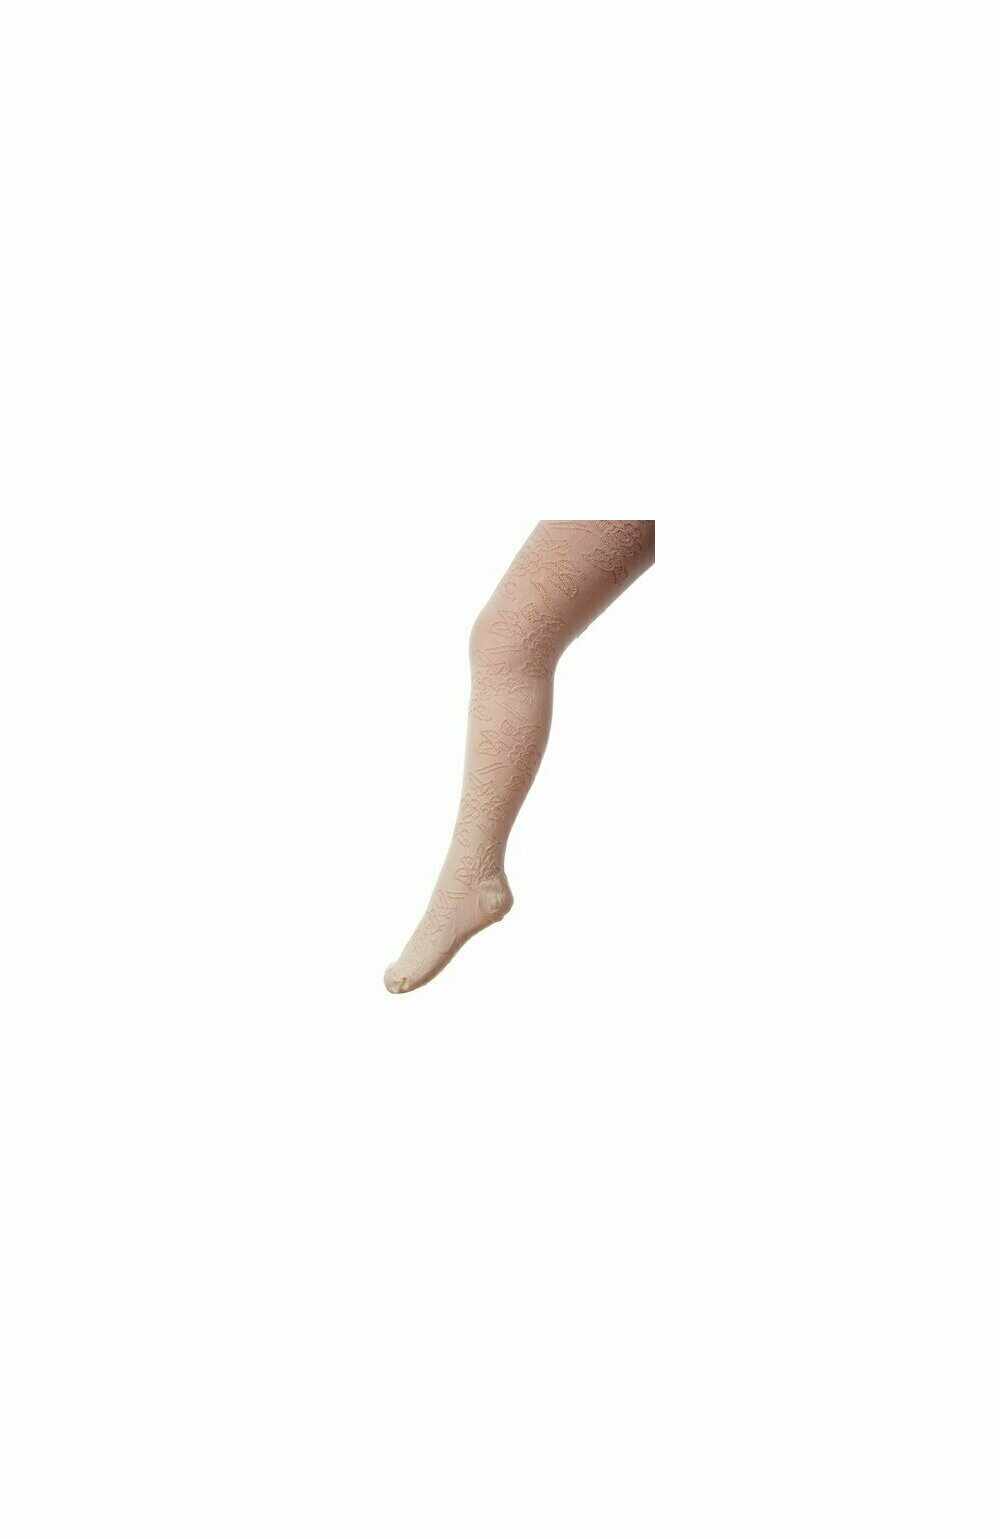 Ciorapi pantalon jacard din bumbac pentru fete 503-004